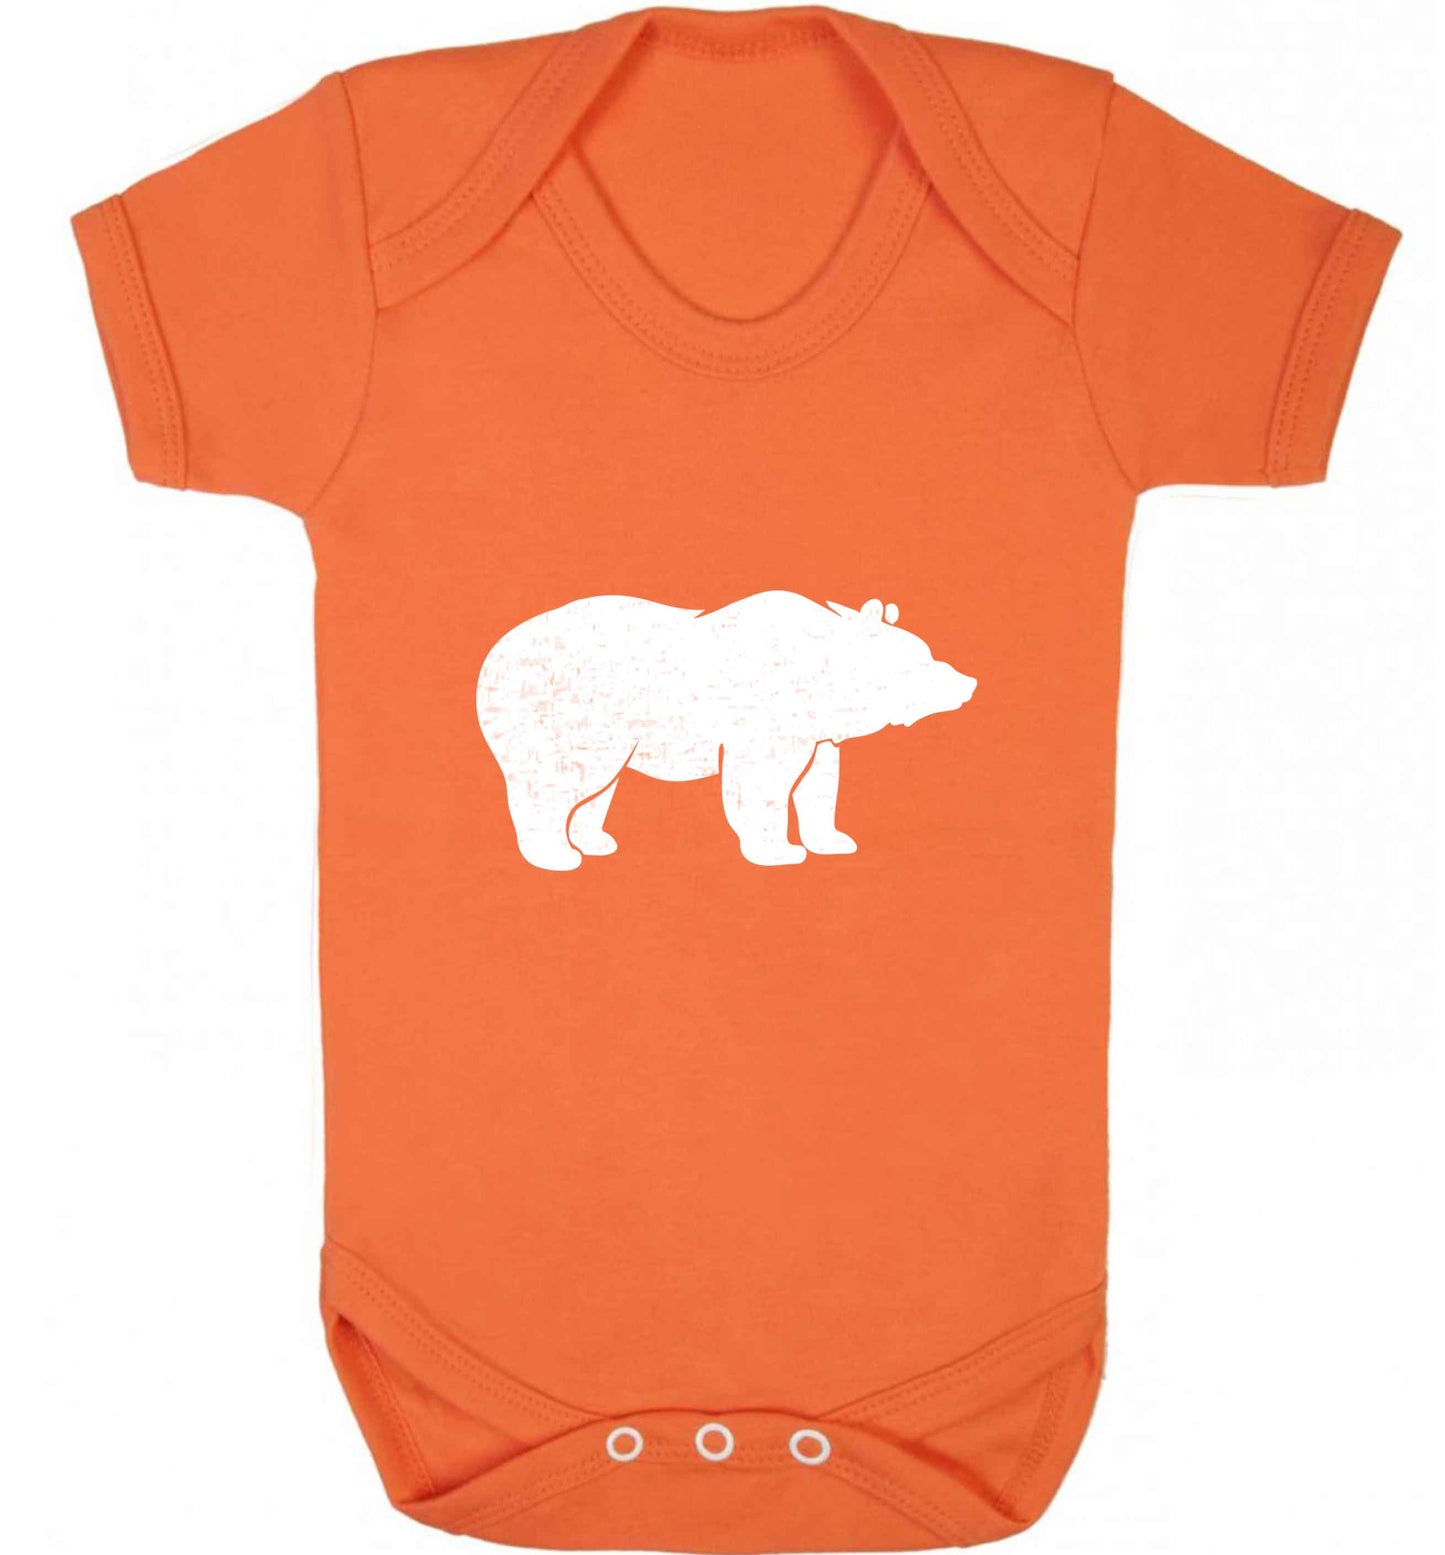 Blue bear baby vest orange 18-24 months